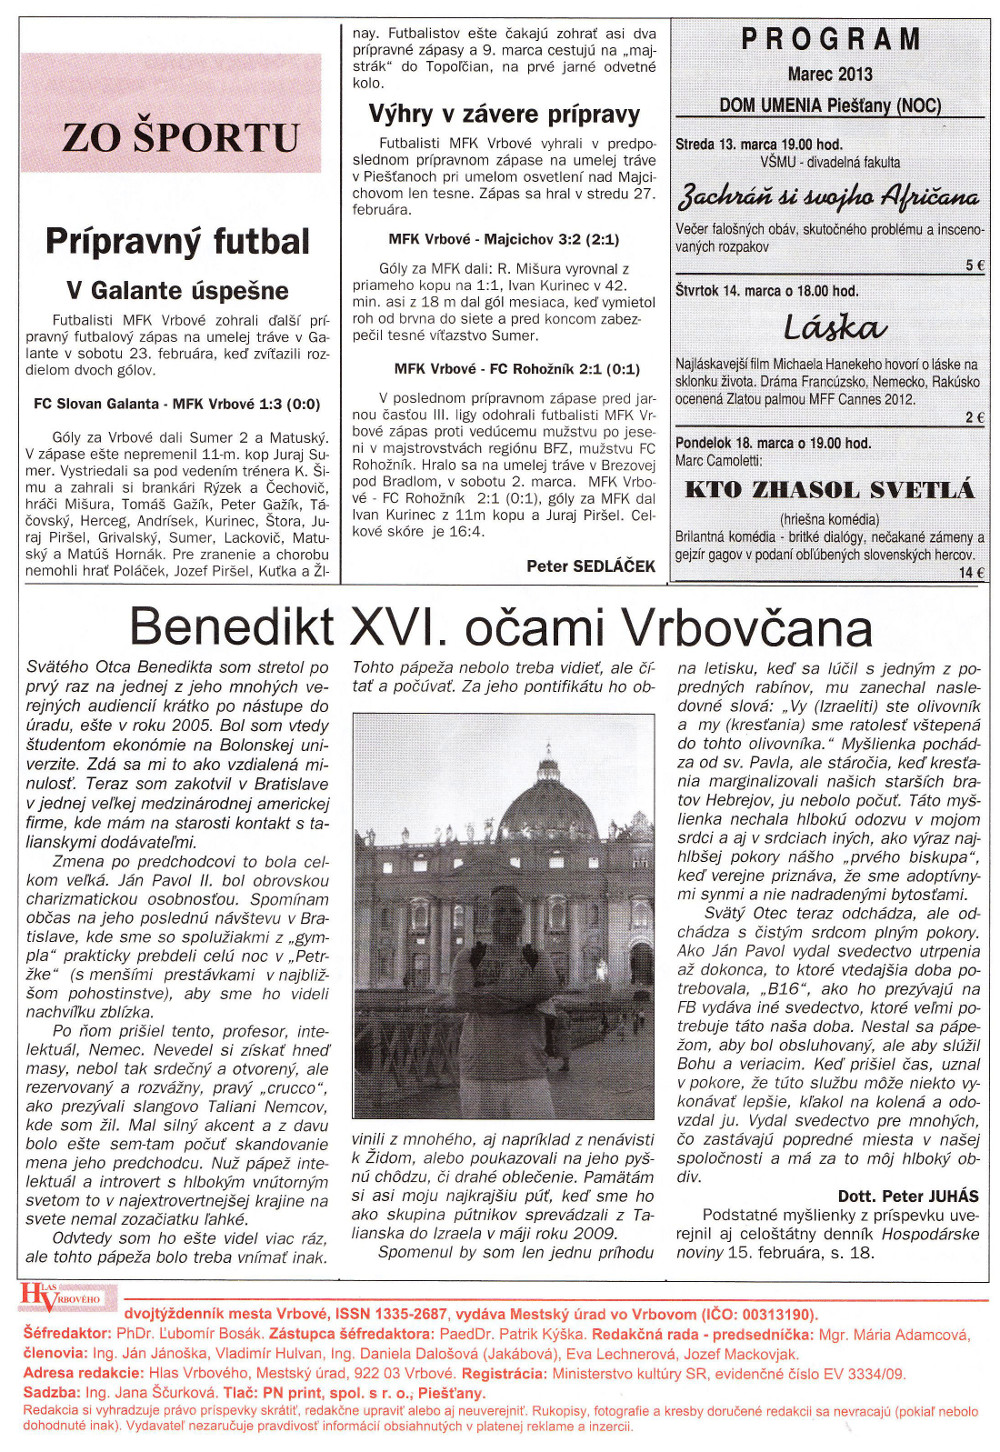 Hlas Vrbového 05/2013, strana 8